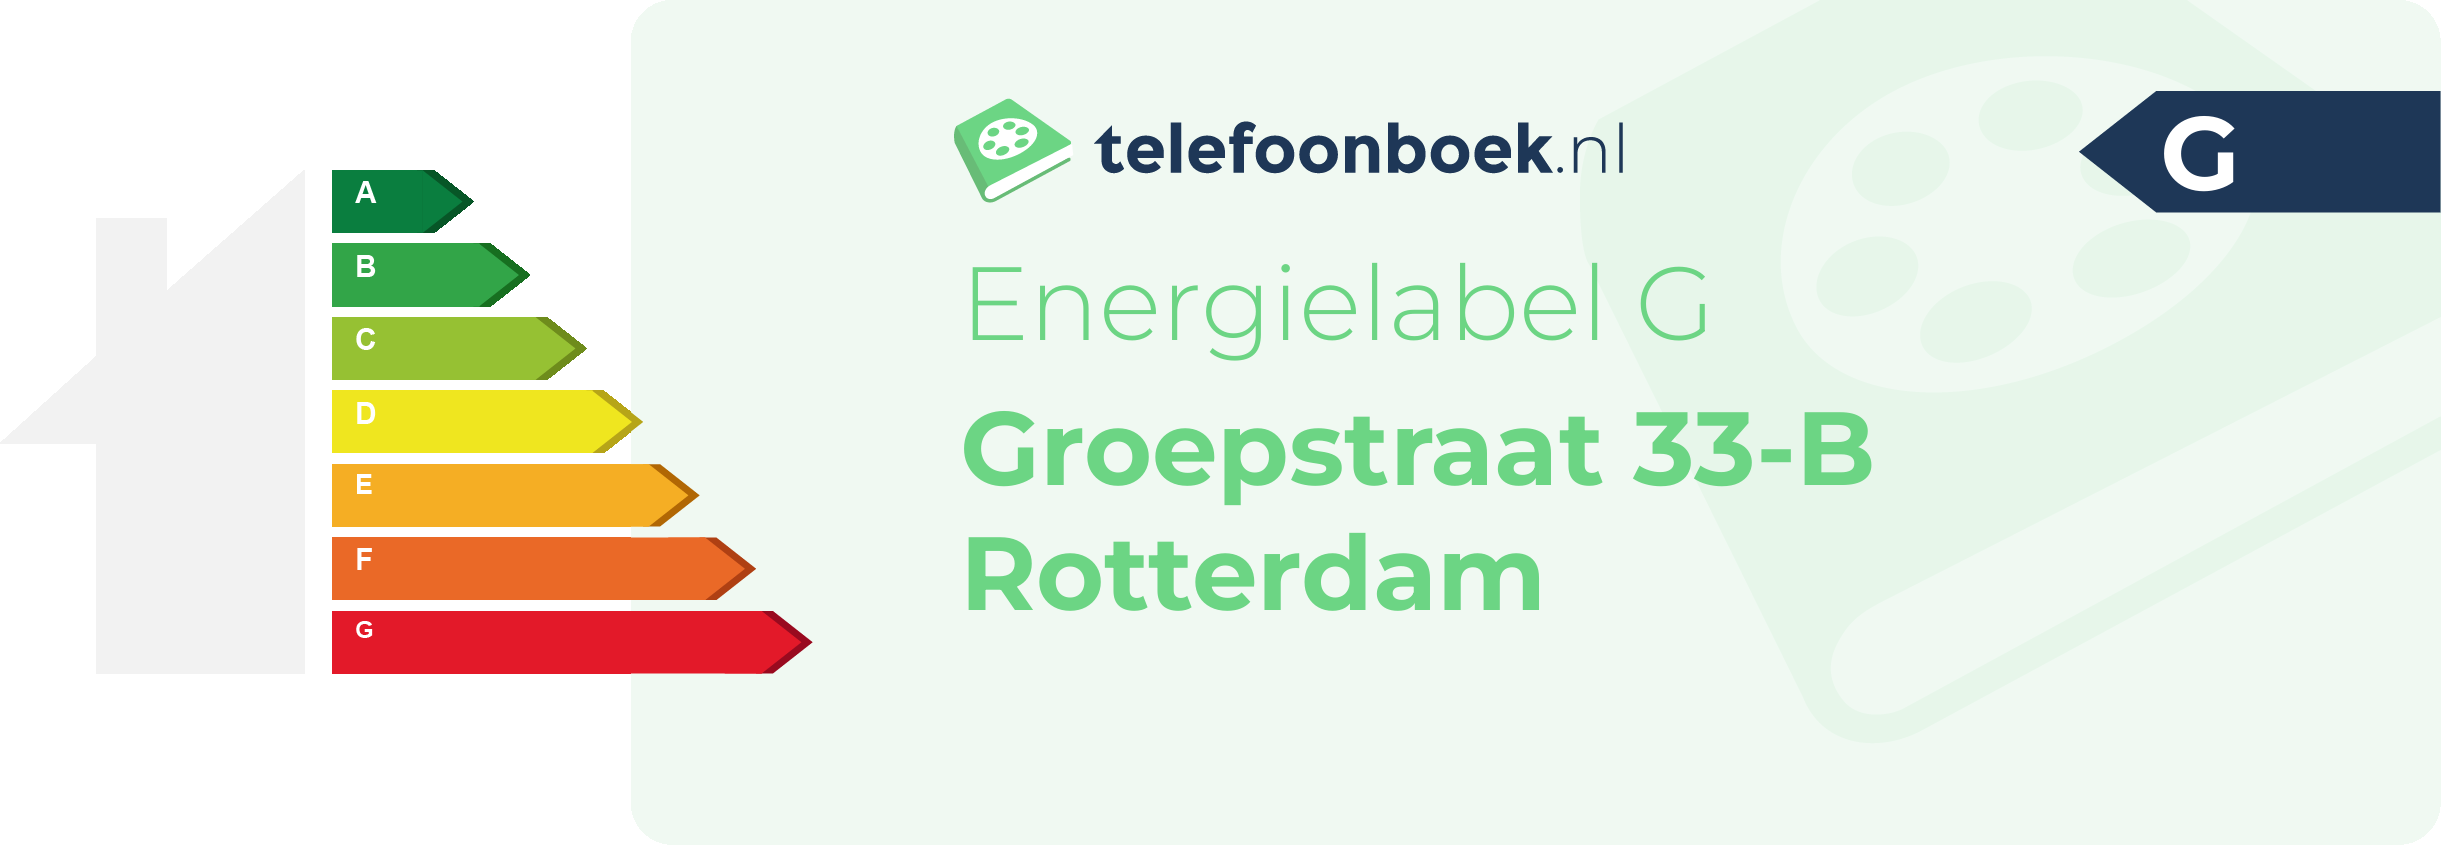 Energielabel Groepstraat 33-B Rotterdam